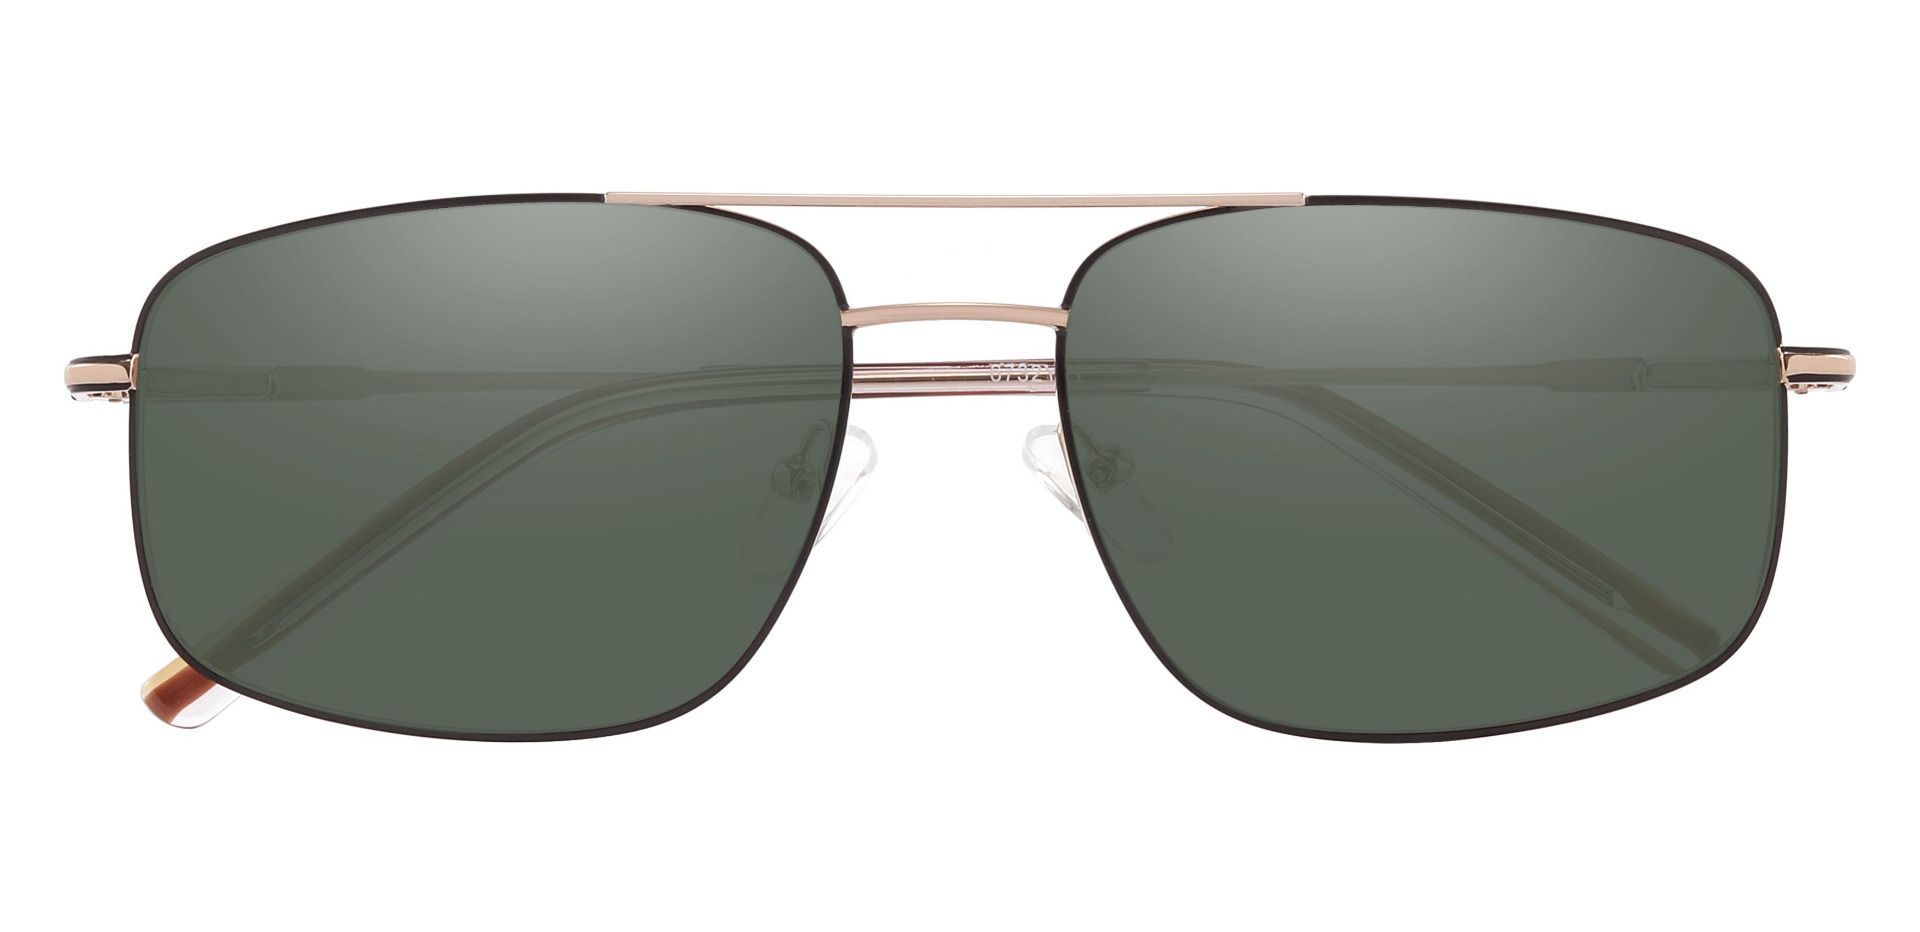 Turner Aviator Reading Sunglasses - Gold Frame With Green Lenses